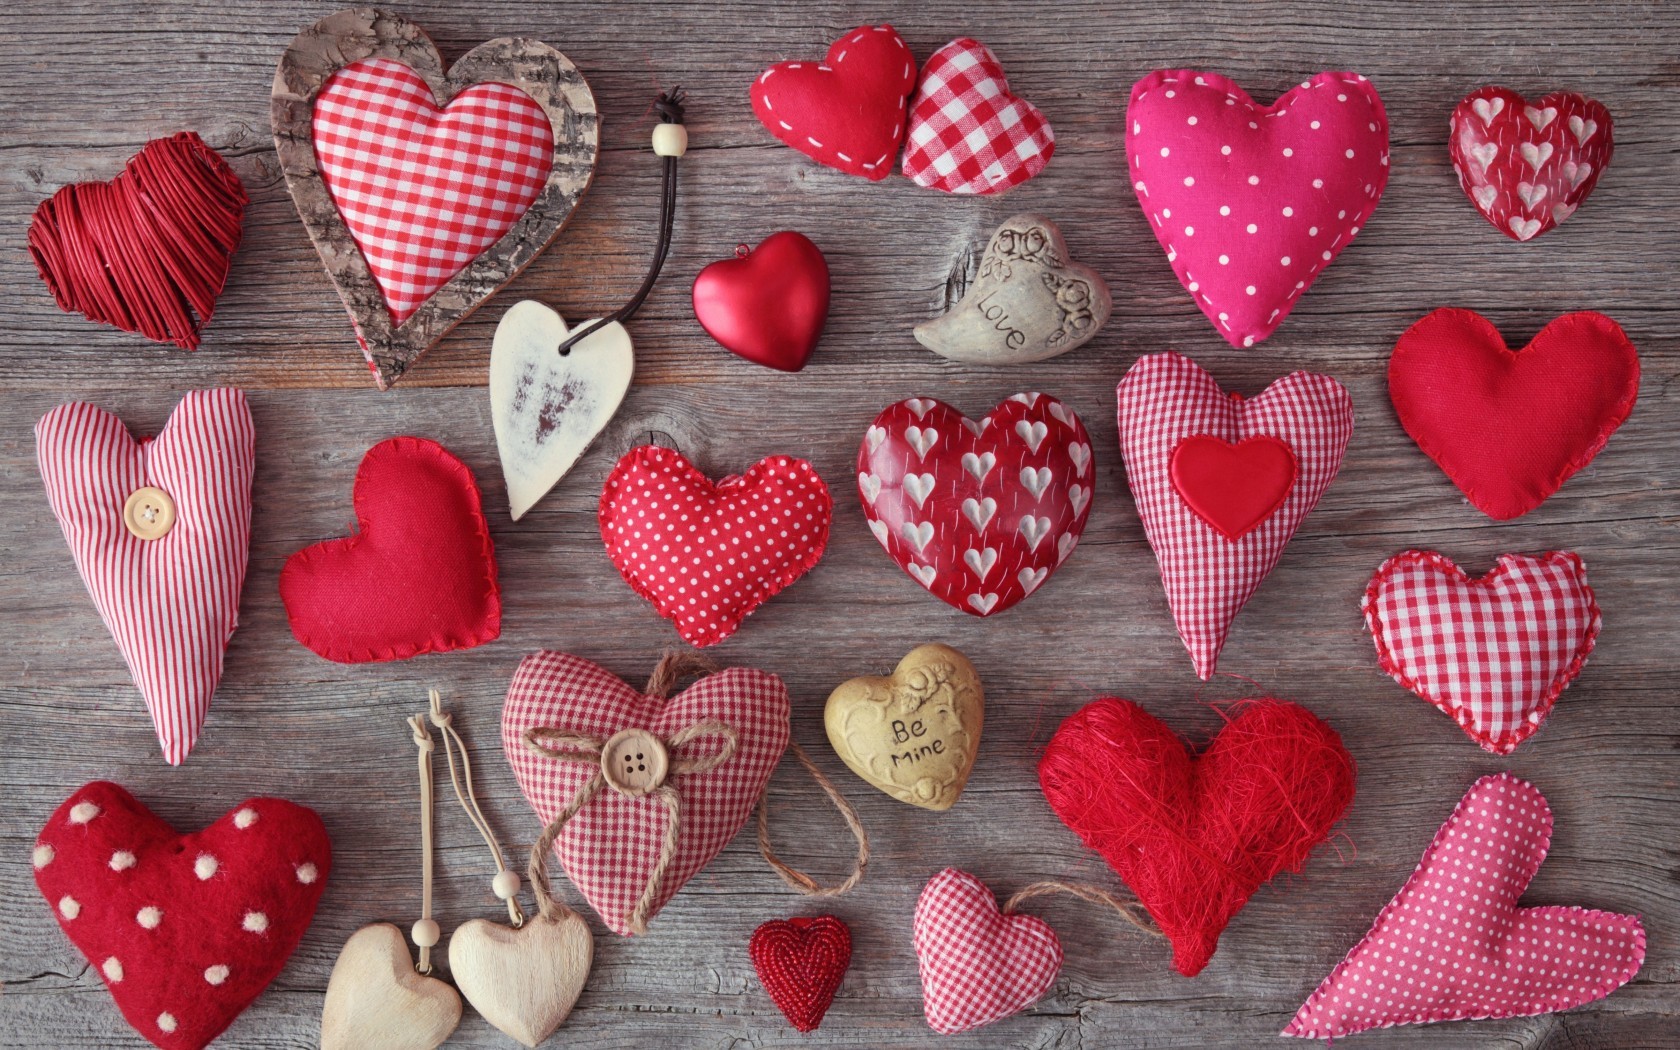 Скачать обои бесплатно День Святого Валентина (Valentine's Day), Праздники, Сердца, Фон, Любовь картинка на рабочий стол ПК